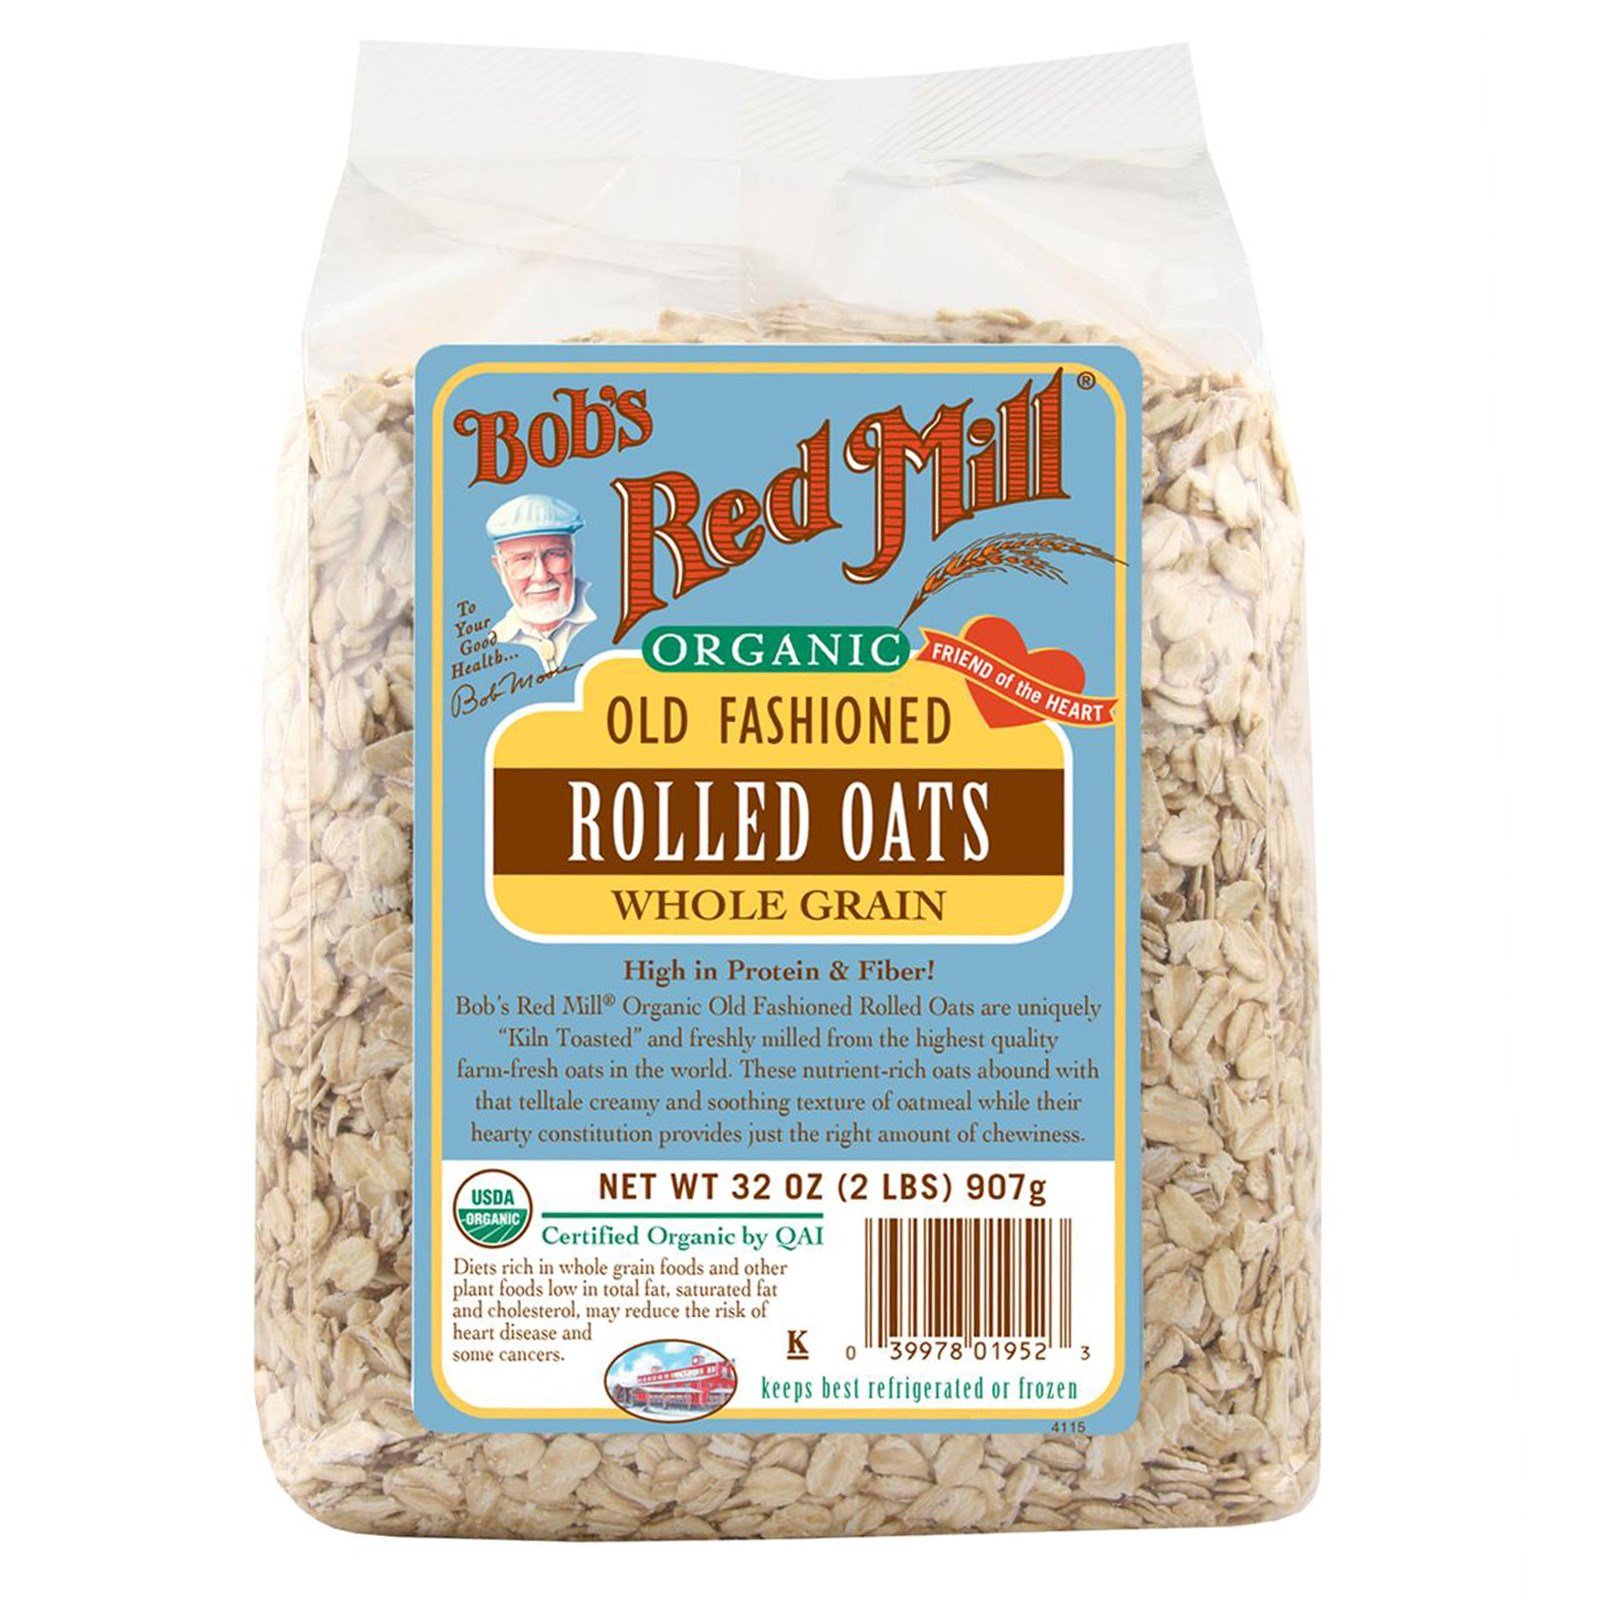 Gluten Free whole grain rolled oats